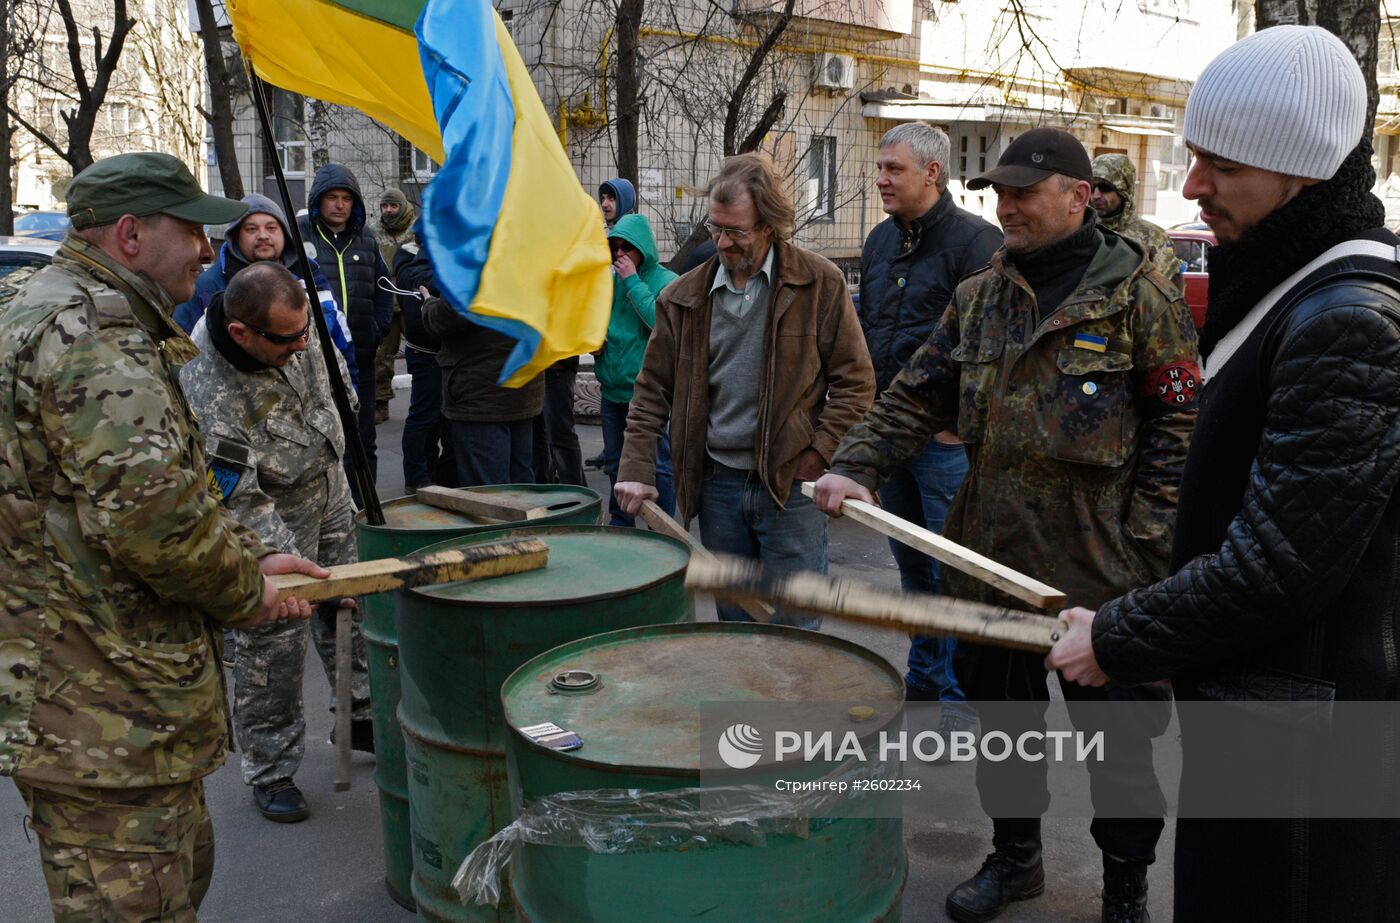 Акция протеста у здания Генпрокуратуры в Киеве